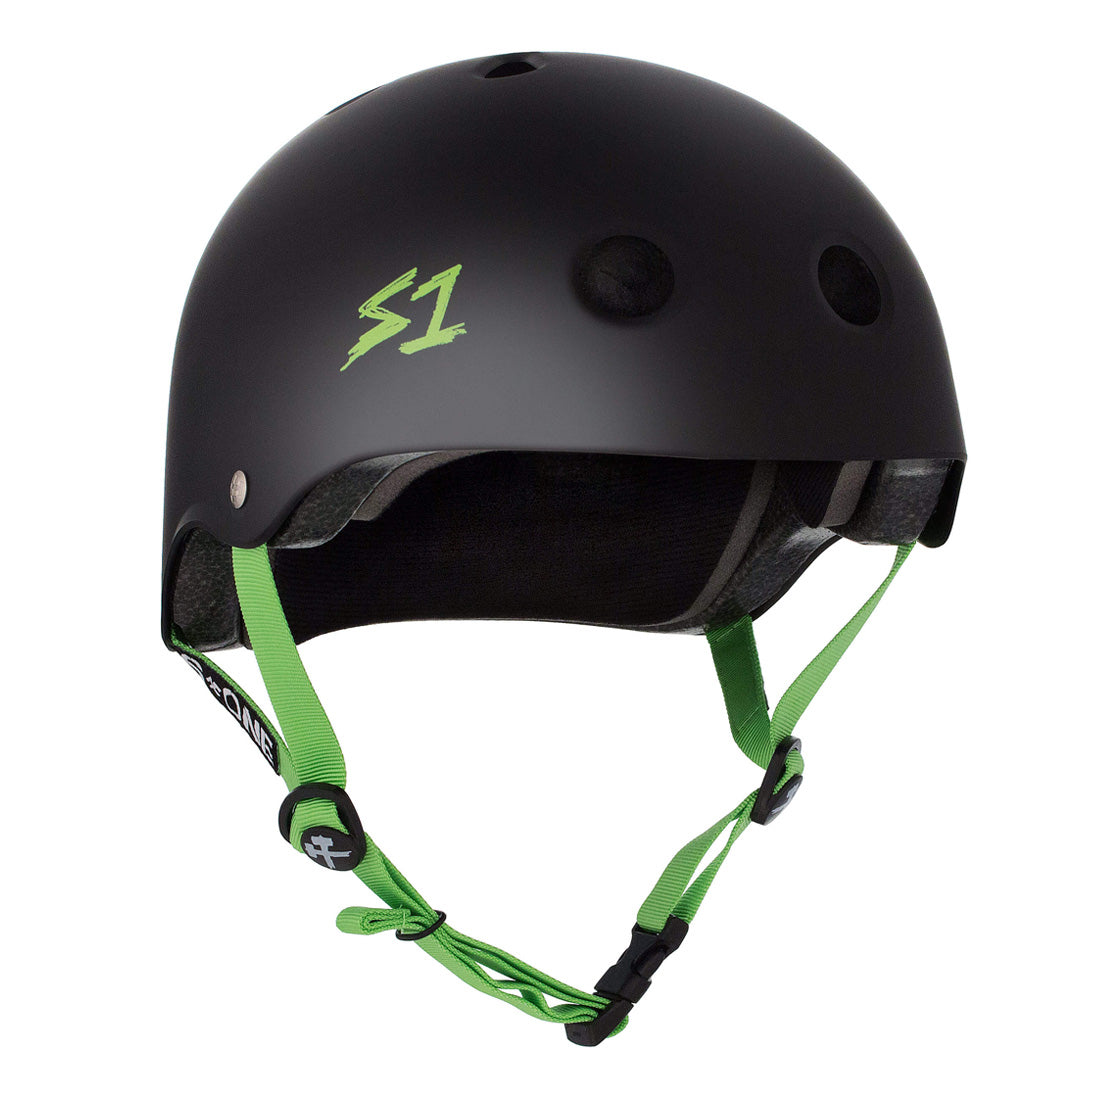 S-One Lifer Helmet - Black/Green Matte Helmets